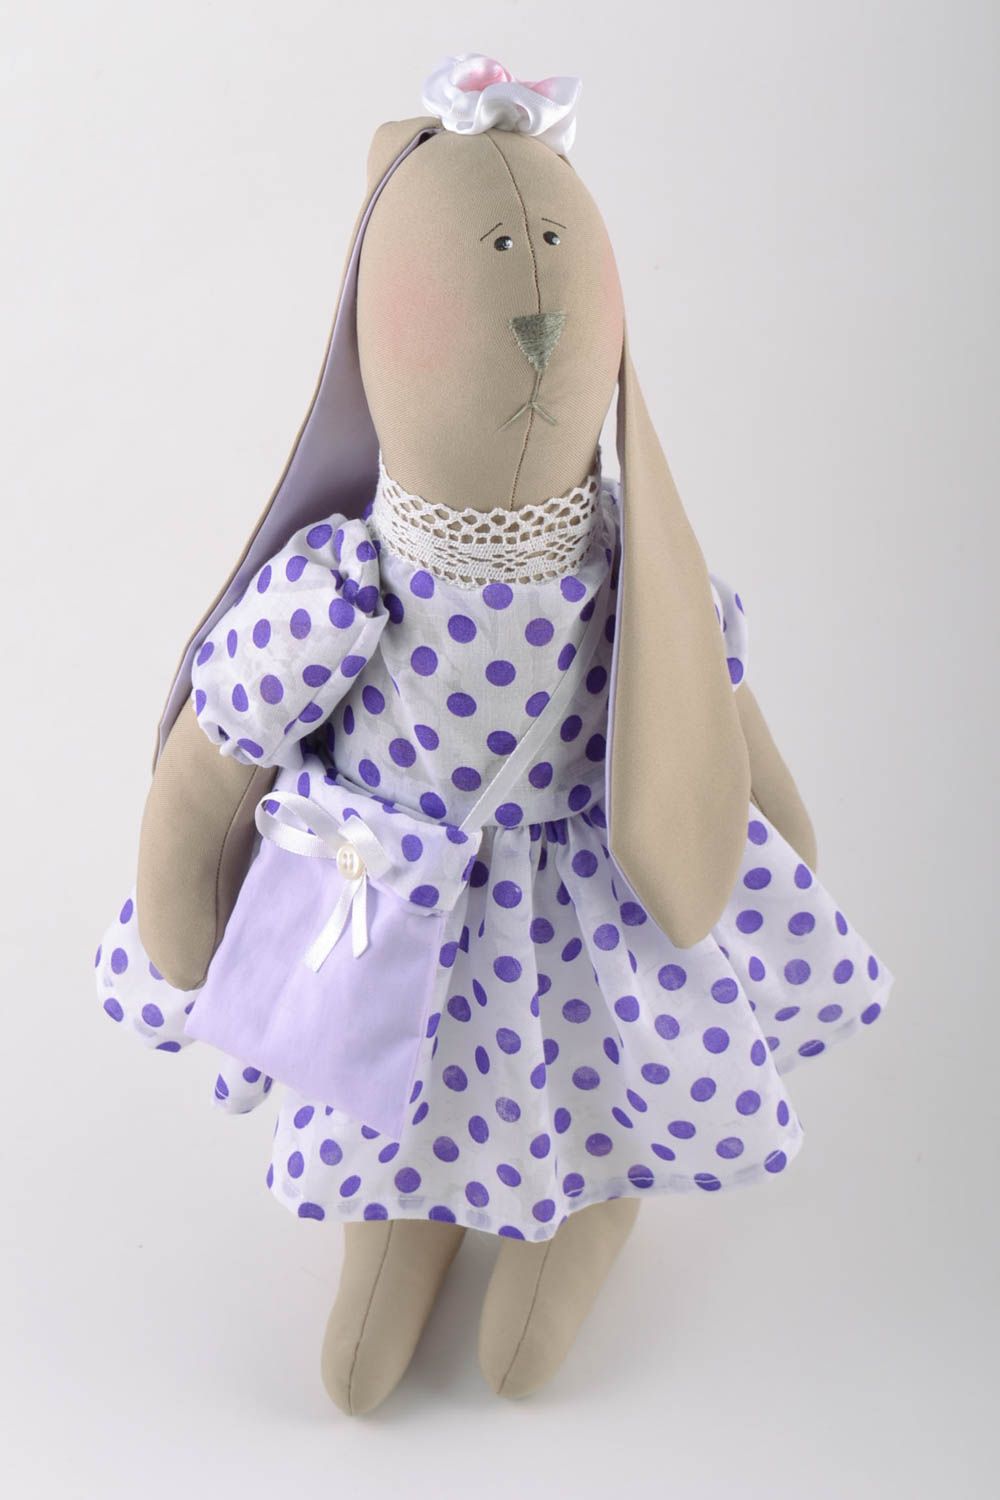 Stoff handmade Kuscheltier Hase im Kleid weich schön für Kleinkinder und Haus Interieur foto 2